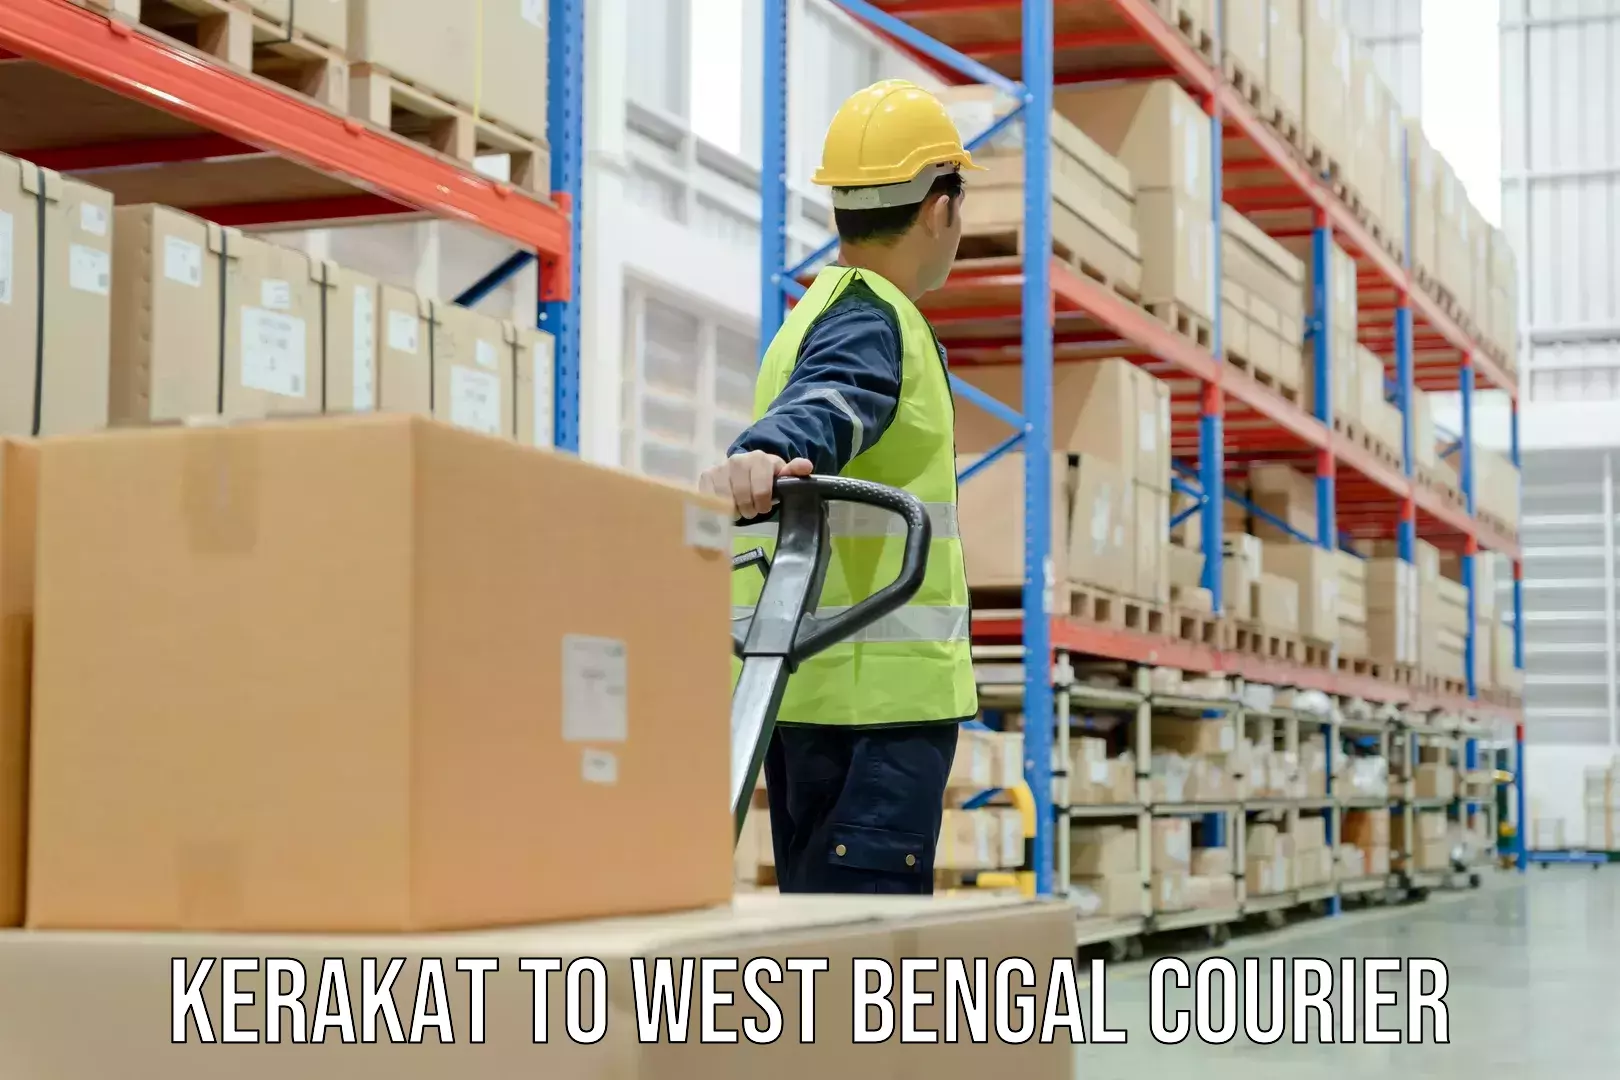 Flexible parcel services Kerakat to West Bengal